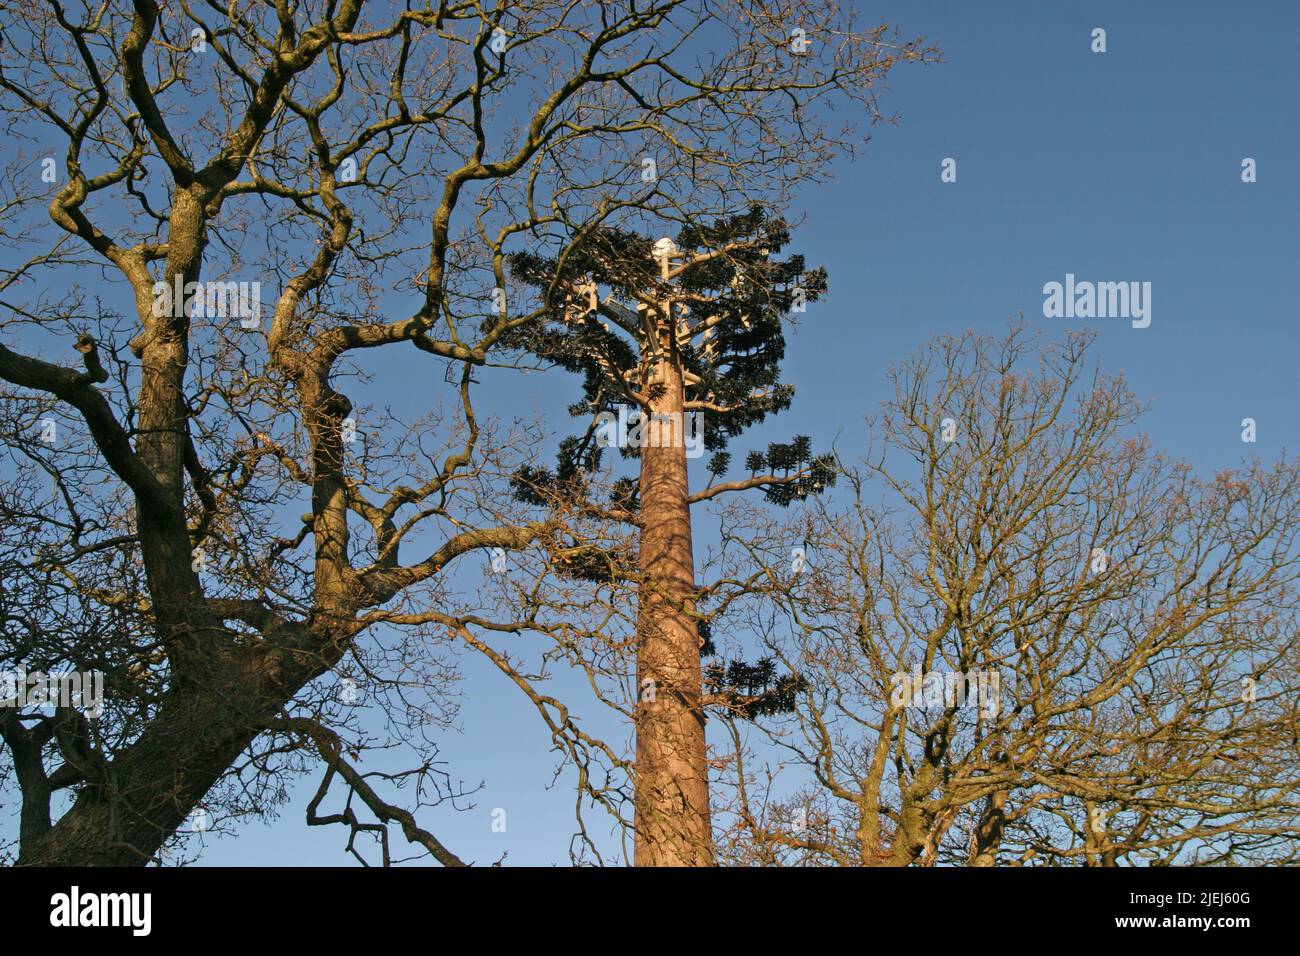 Mobilfunkmast verkleidet als Baum zwischen Bangor & Caernarfon Gwynedd Wales GB UK Dezember 2003 Stockfoto